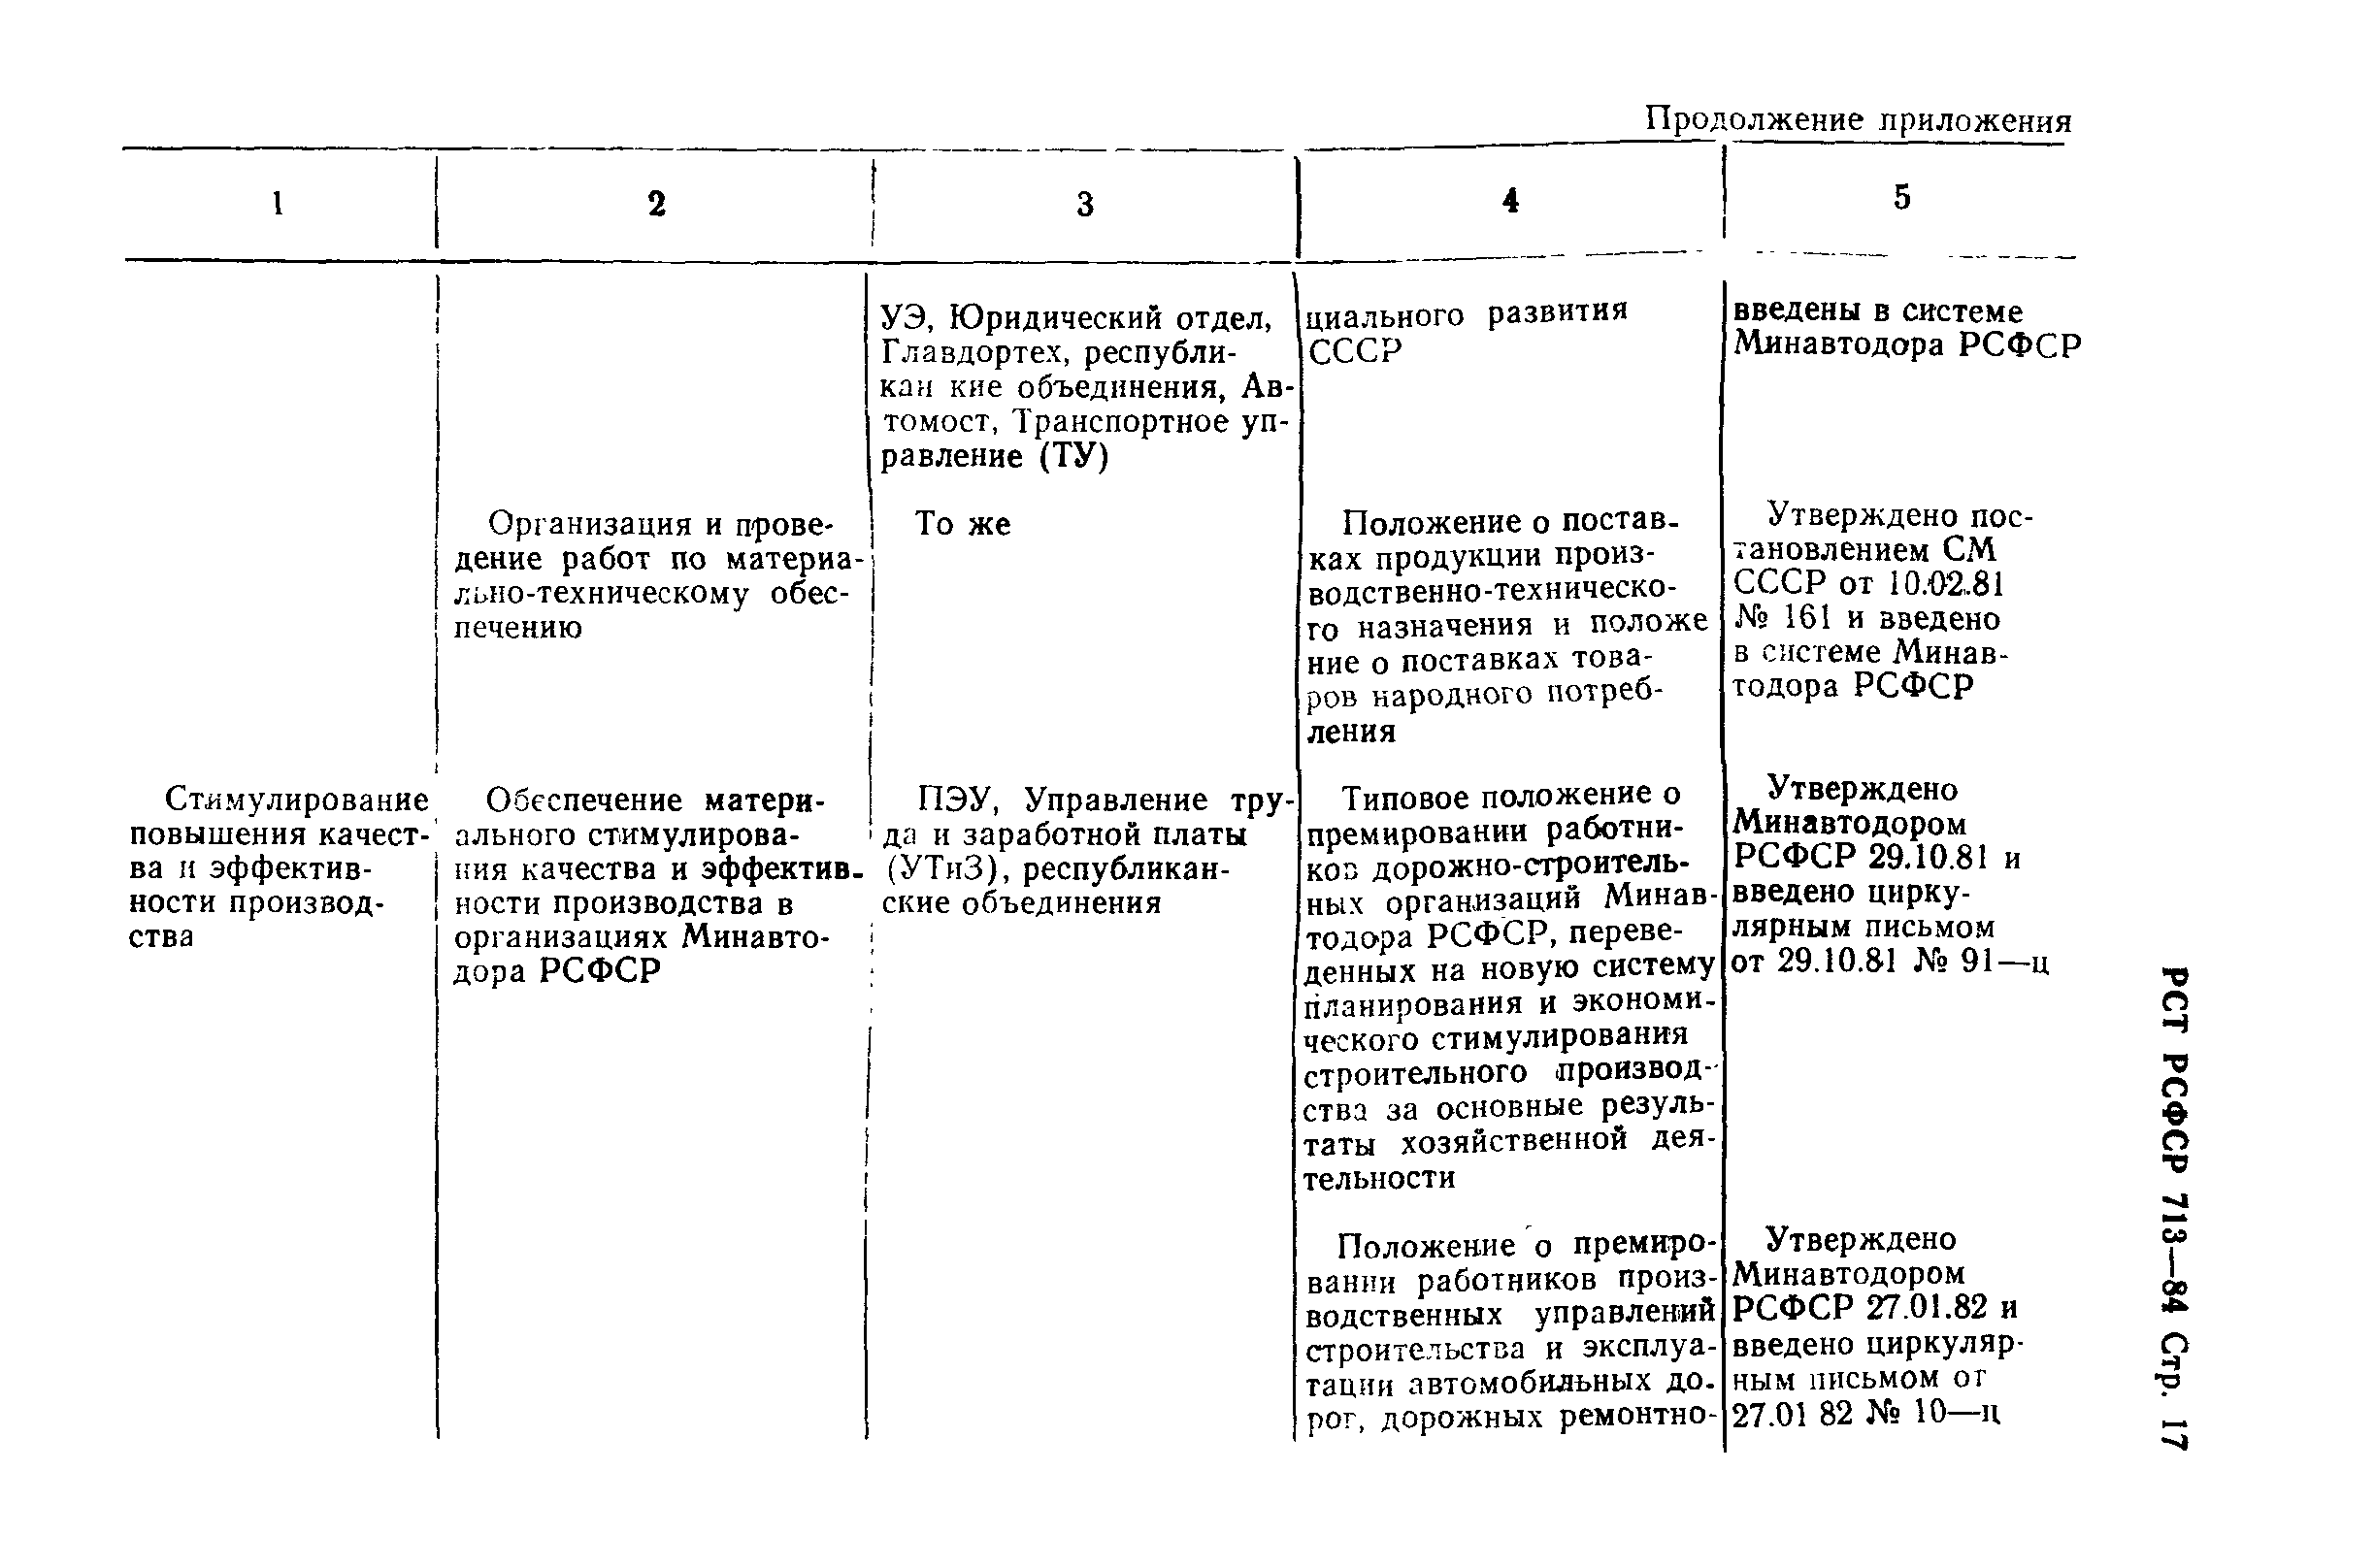 РСТ РСФСР 713-84